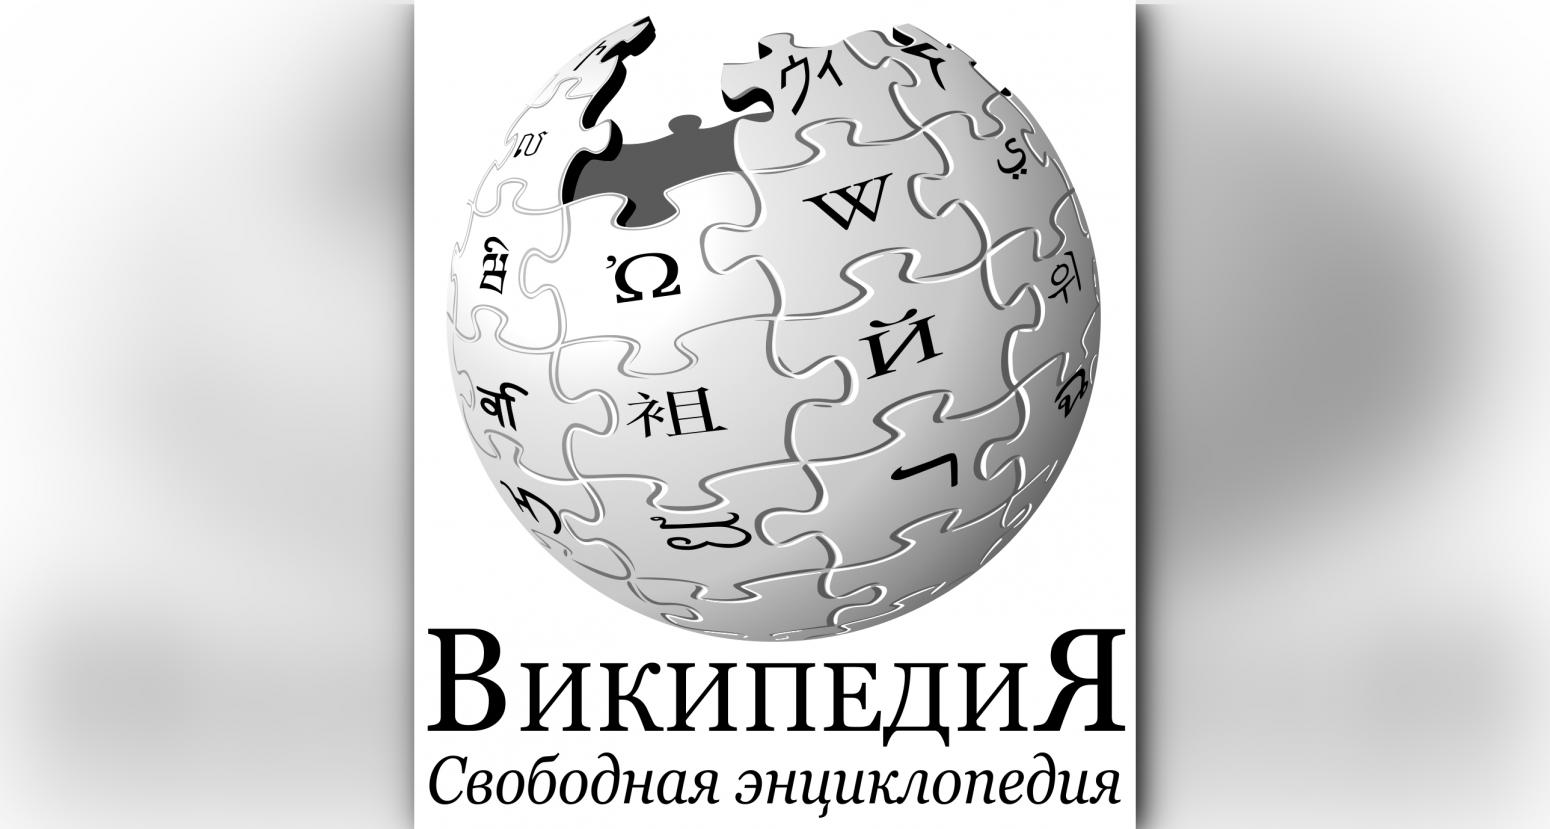 Дата википедия. Роскомнадзор применил меры понуждения в отношении Википедии.